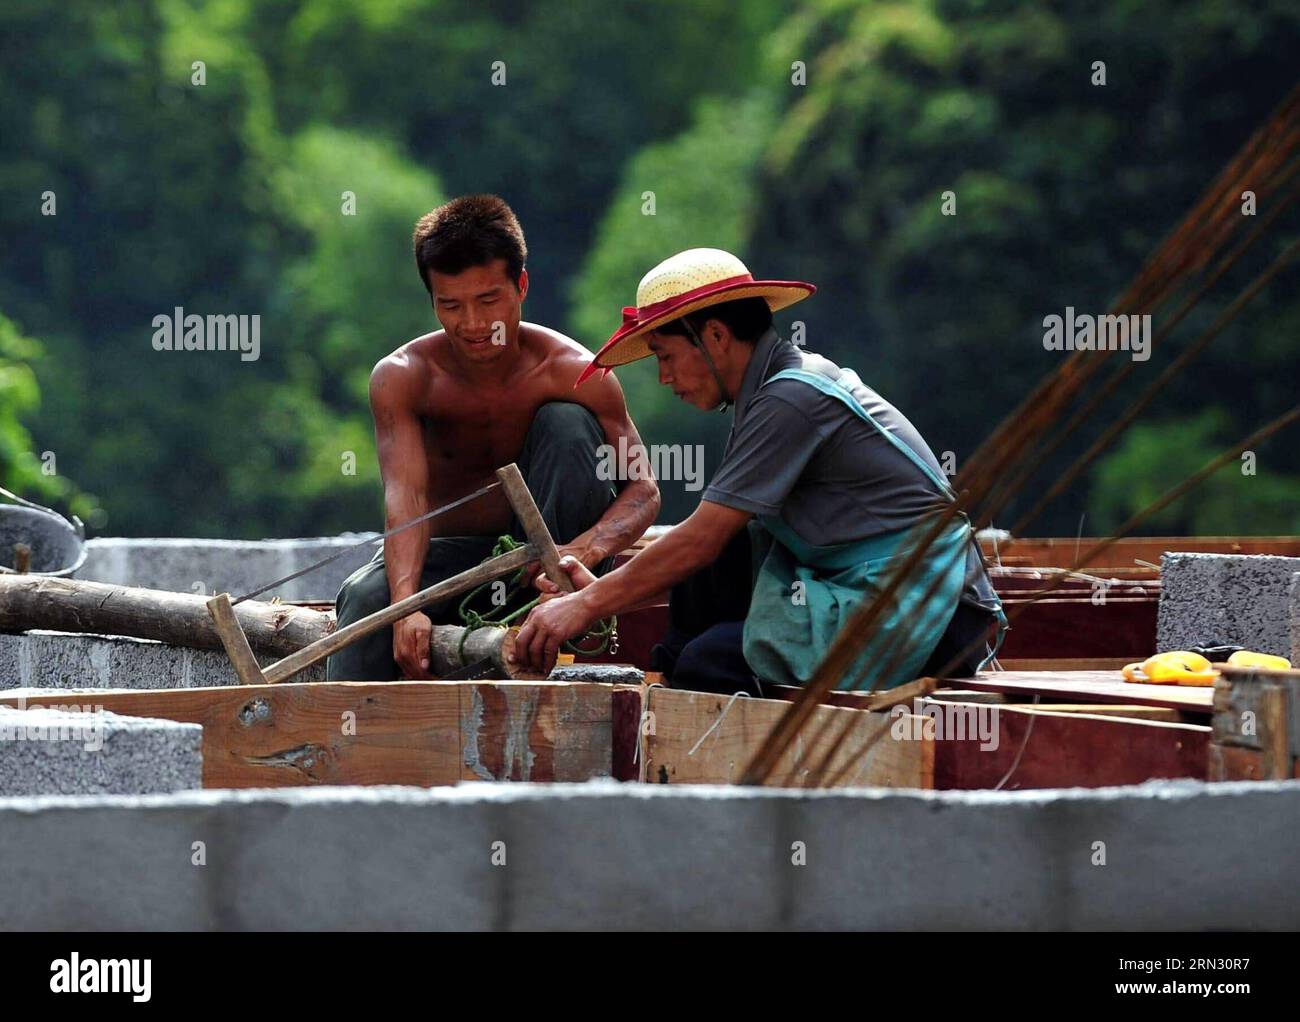 Der 33-jährige Lan Guimao (L) baut sein neues Haus in Nongyong Villge of Bansheng Township, südwestchinesische autonome Region Guangxi Zhuang, 14. Juli 2013. Wegen des Mangels an Flachland bauen die meisten Familien in den westlichen Berggebieten von Dahua ihre Häuser auf Hügeln. In den Bezirken Qibainong und Bansheng in Dahua leben Menschen der Miao-Volksgruppe seit etwa tausend Jahren in den Bergen. Sie verlassen sich auf das Pflanzen von Körnern für ihren Lebensunterhalt. Das dreistöckige Stelzengebäude ist im traditionellen Architekturstil der beiden Grafschaften gehalten. Die Menschen züchten Vieh im unteren Stockwerk, Stockfoto